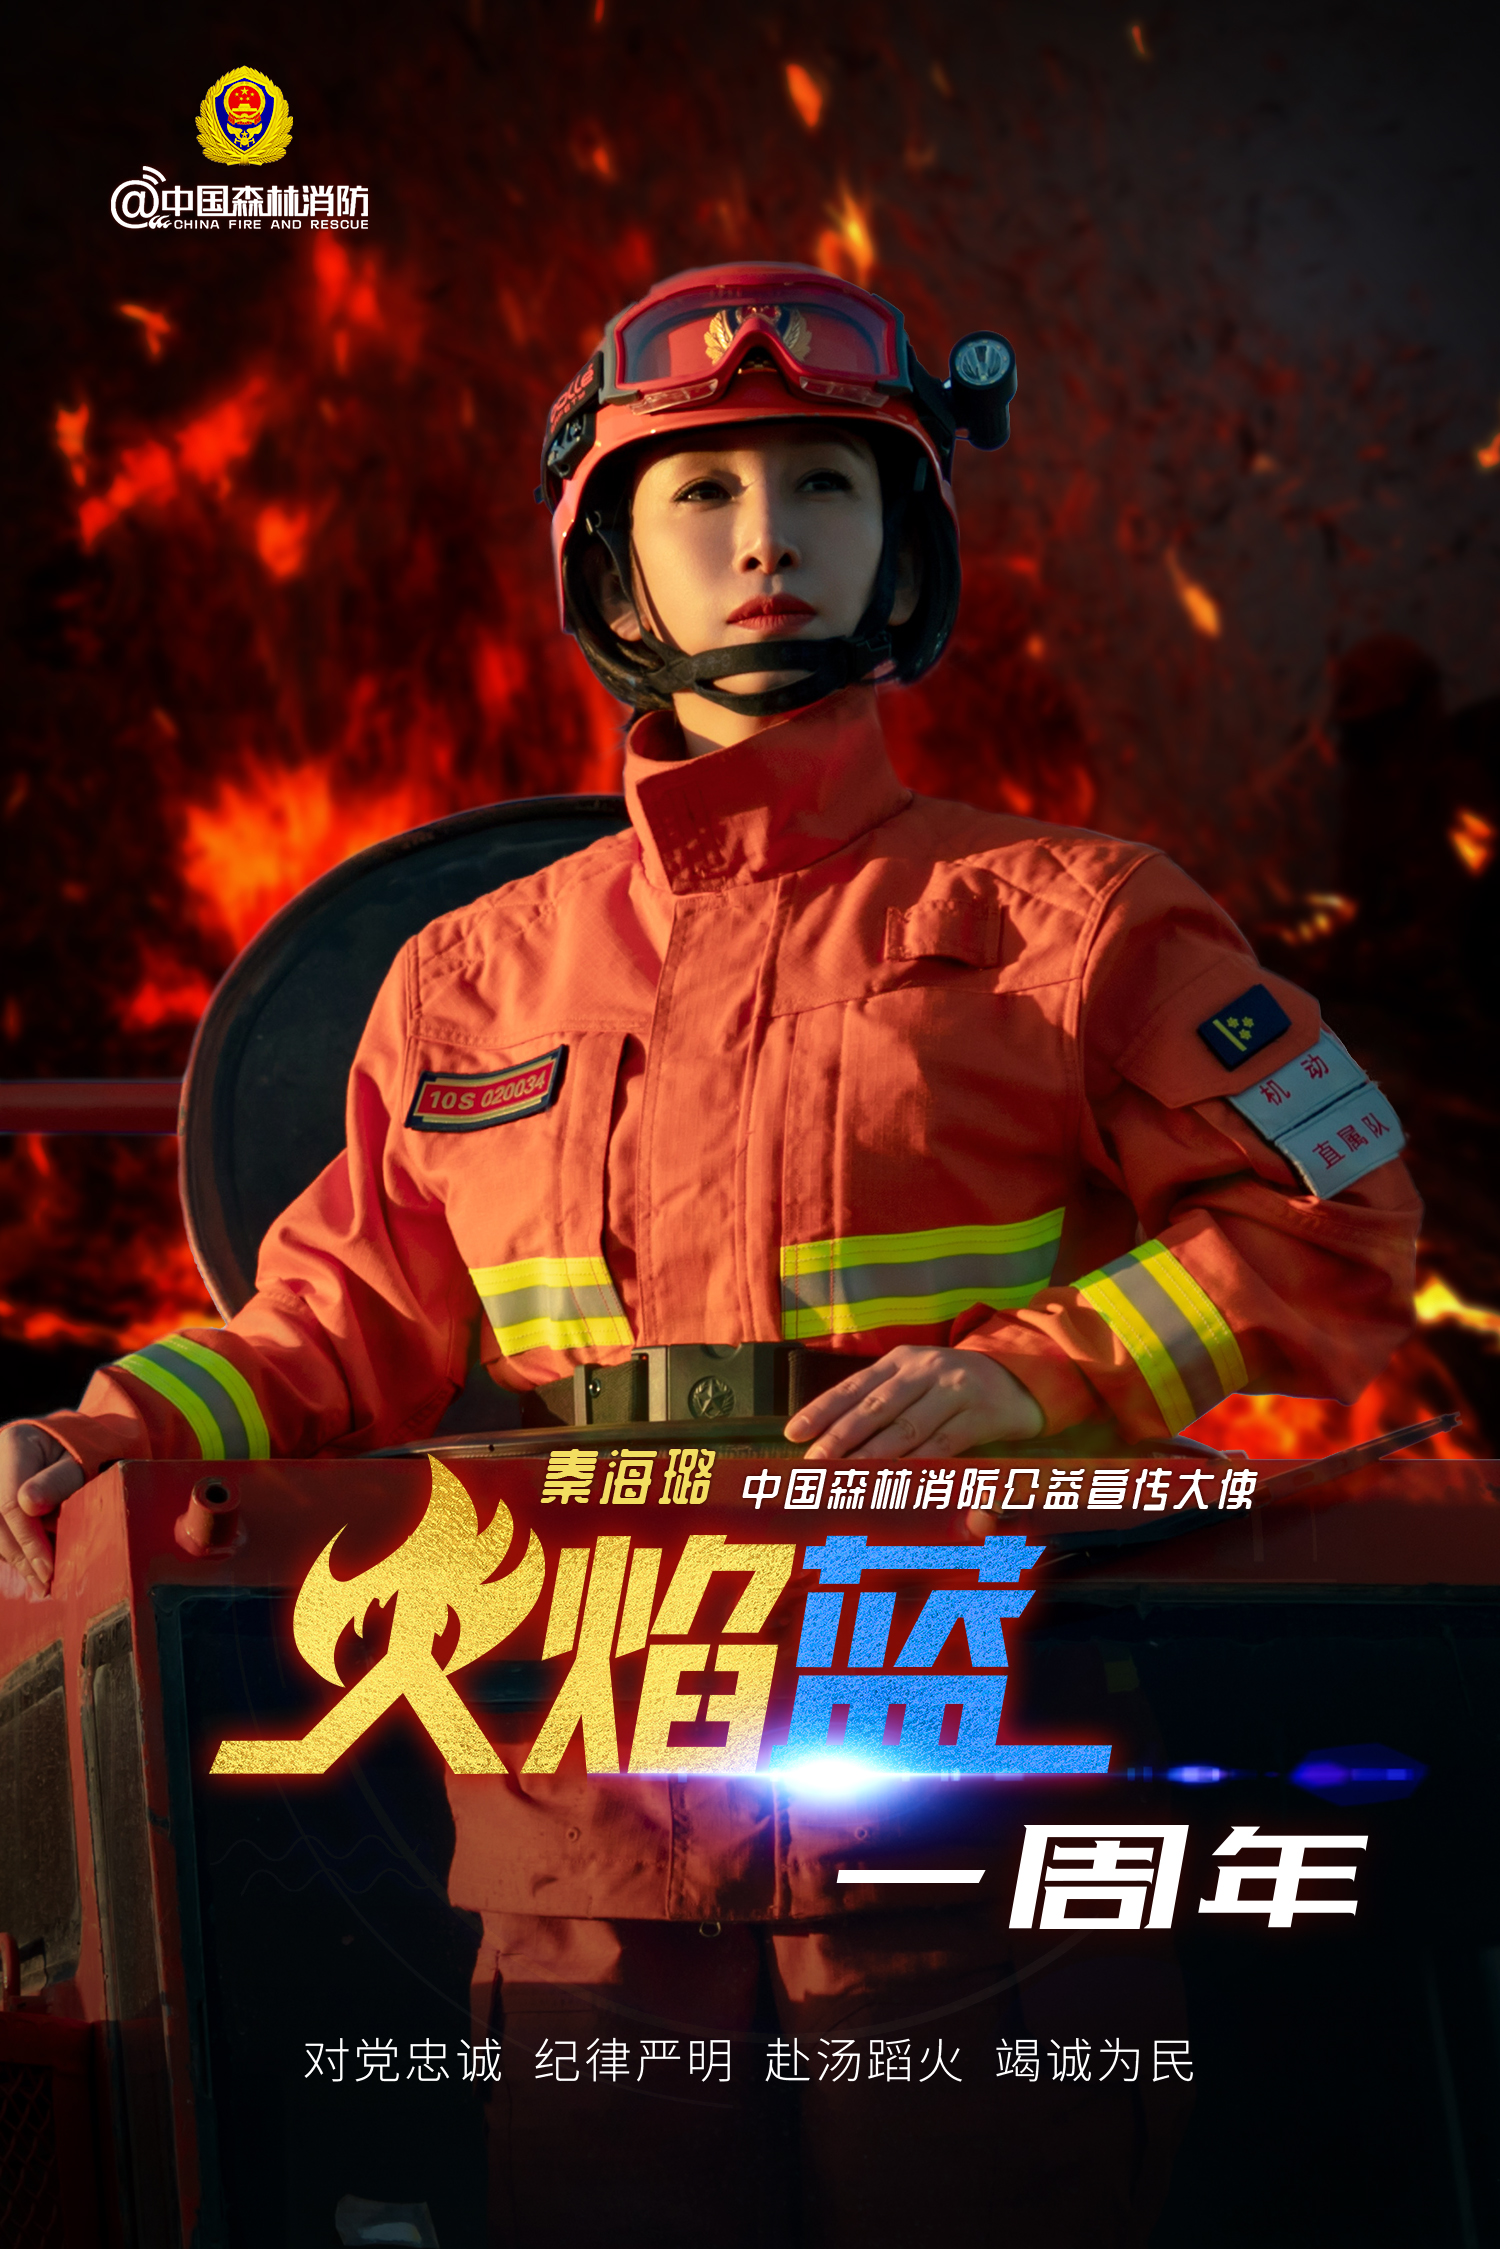 消防日官宣秦海璐正式担任中国森林消防公益宣传大使